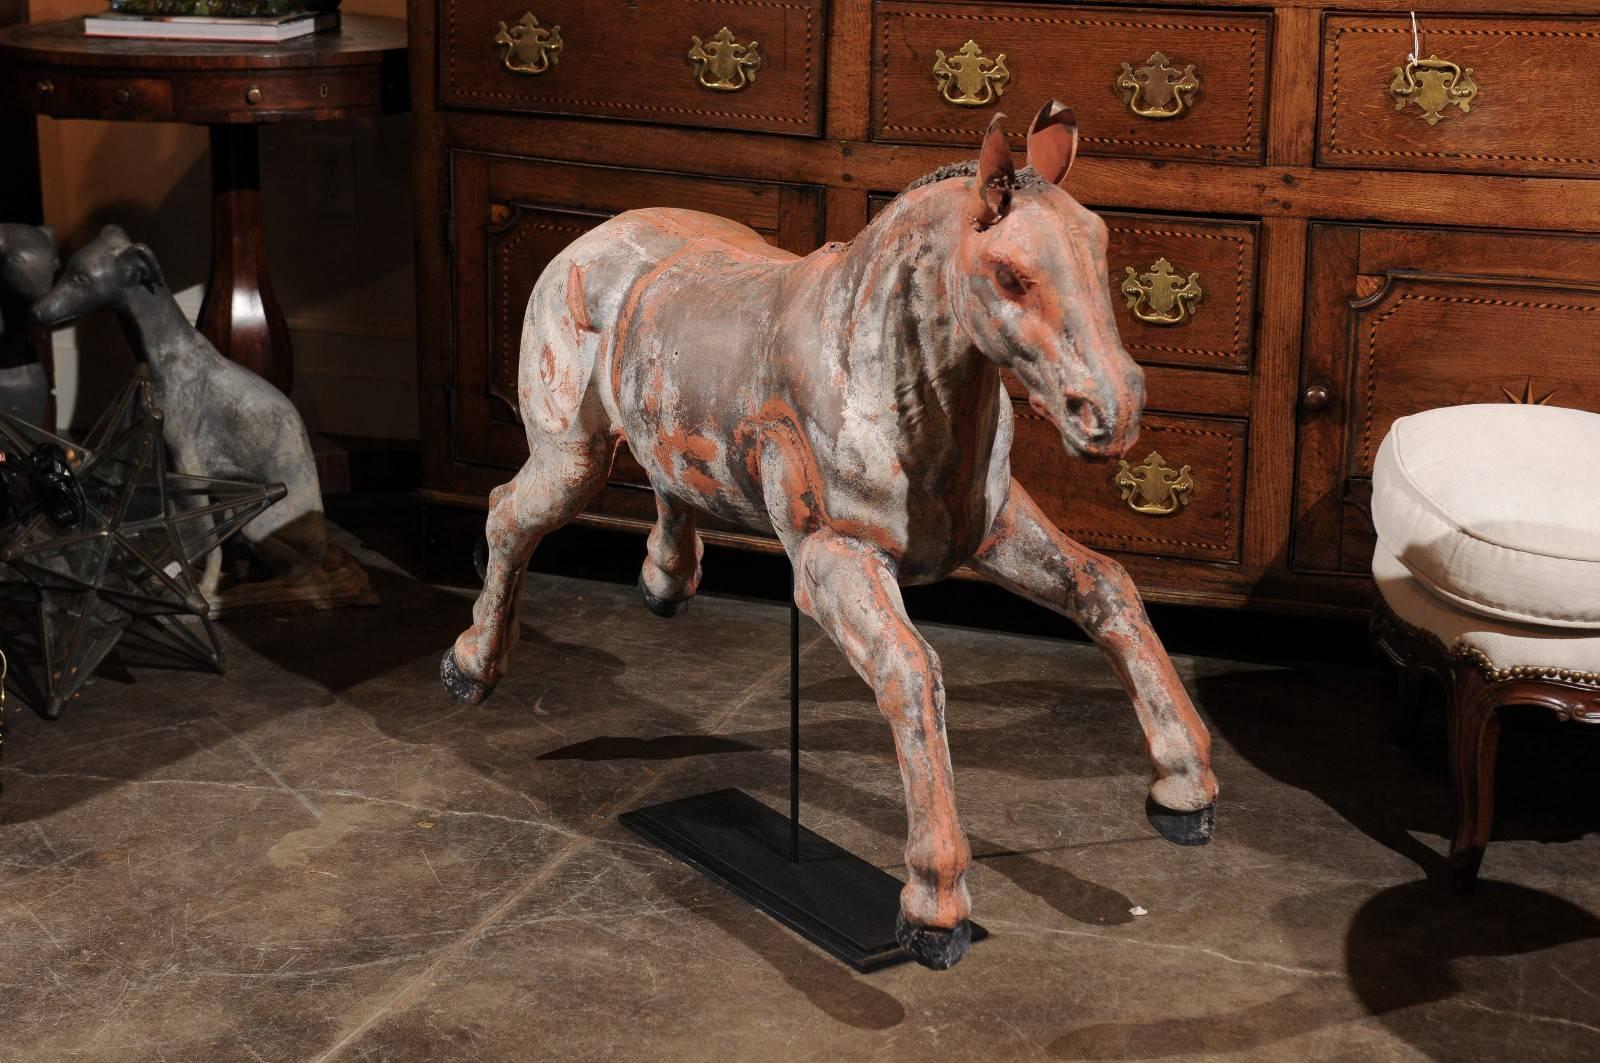 Un exquis bébé cheval continental du début du 20e siècle monté sur une base en fer. Ce joyeux poulain est pris en plein saut alors qu'il est peut-être en train d'apprendre à galoper. Voyez comme ses jambes sont plus courtes et plus robustes que